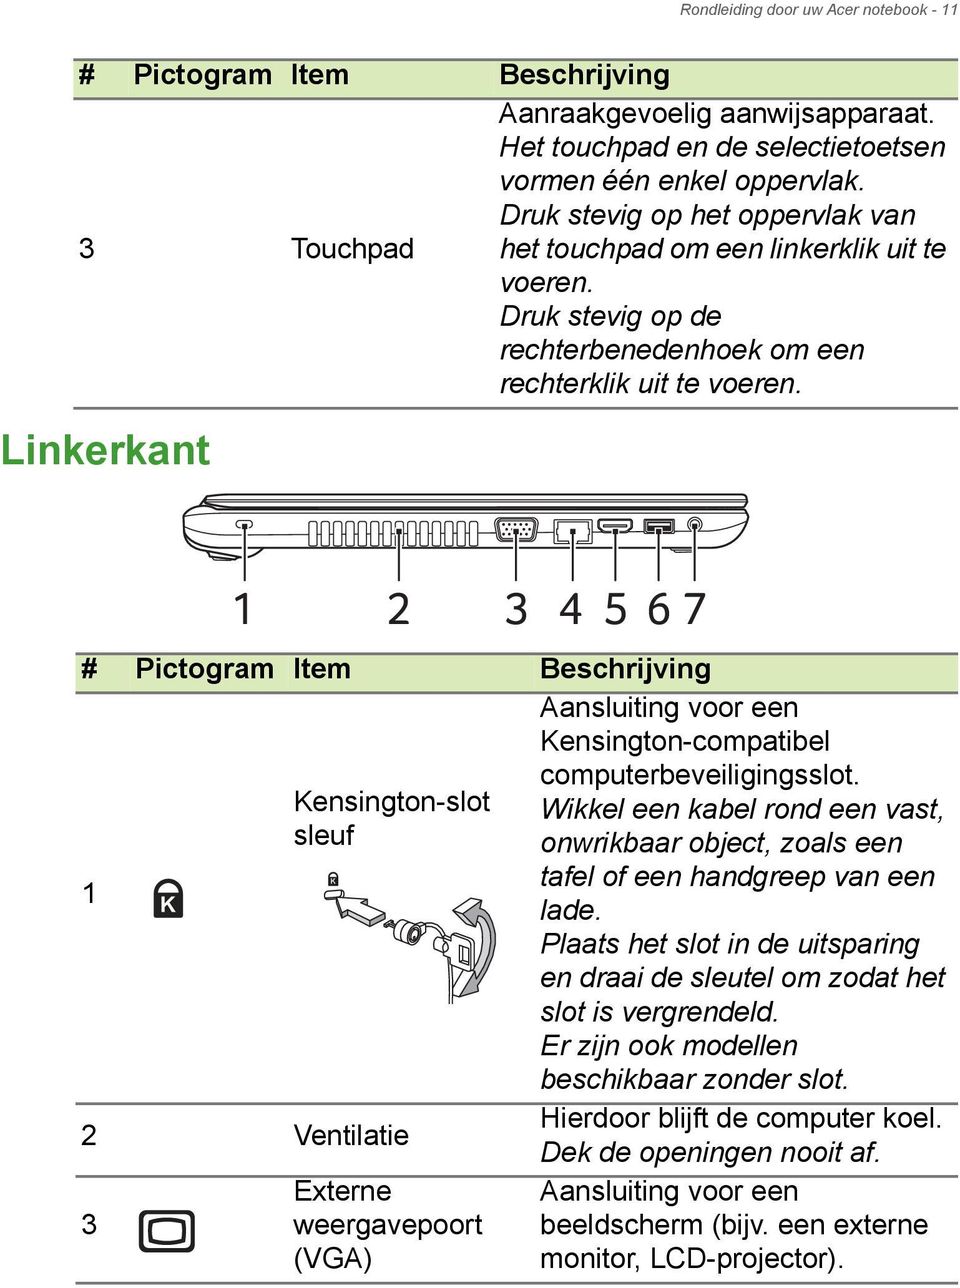 Linkerkant 1 2 3 4 5 67 # Pictogram Item Beschrijving 1 Kensington-slot sleuf 2 Ventilatie 3 Externe weergavepoort (VGA) Aansluiting voor een Kensington-compatibel computerbeveiligingsslot.